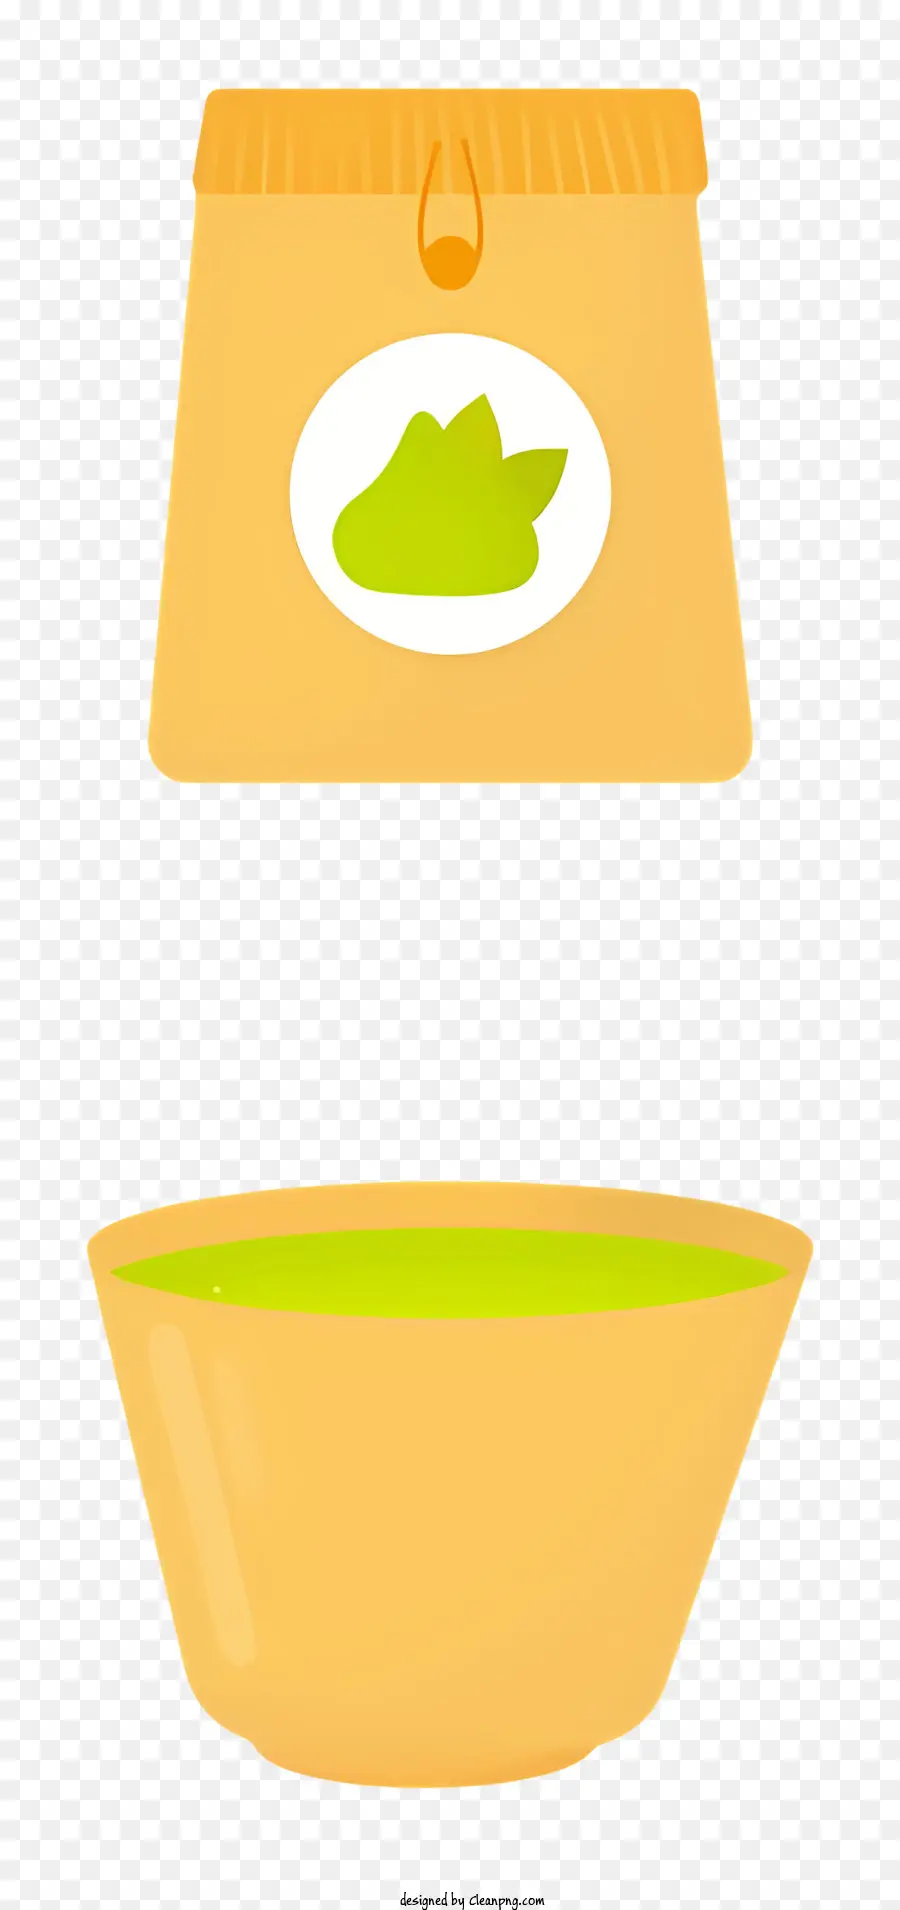 grüner Tee - Schüssel mit grünem Tee mit Griff und Tasche